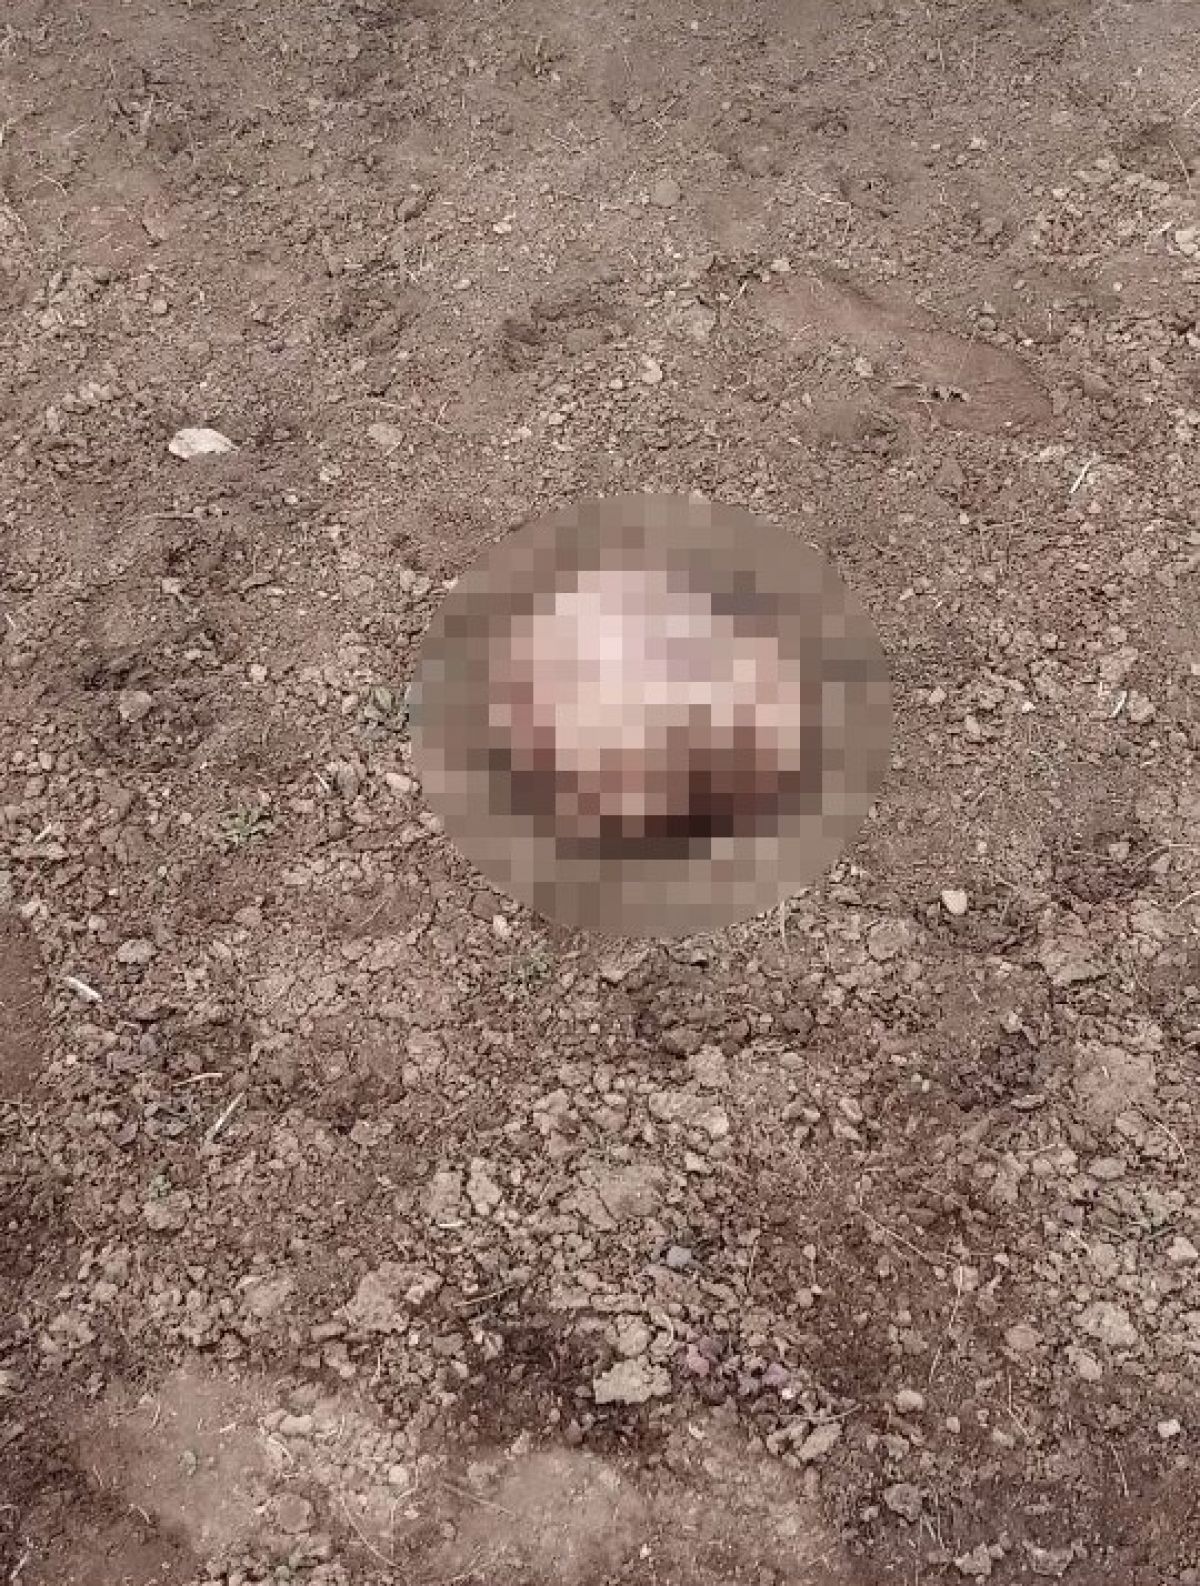 İran sınırında parçalanmış ceset bulundu #2